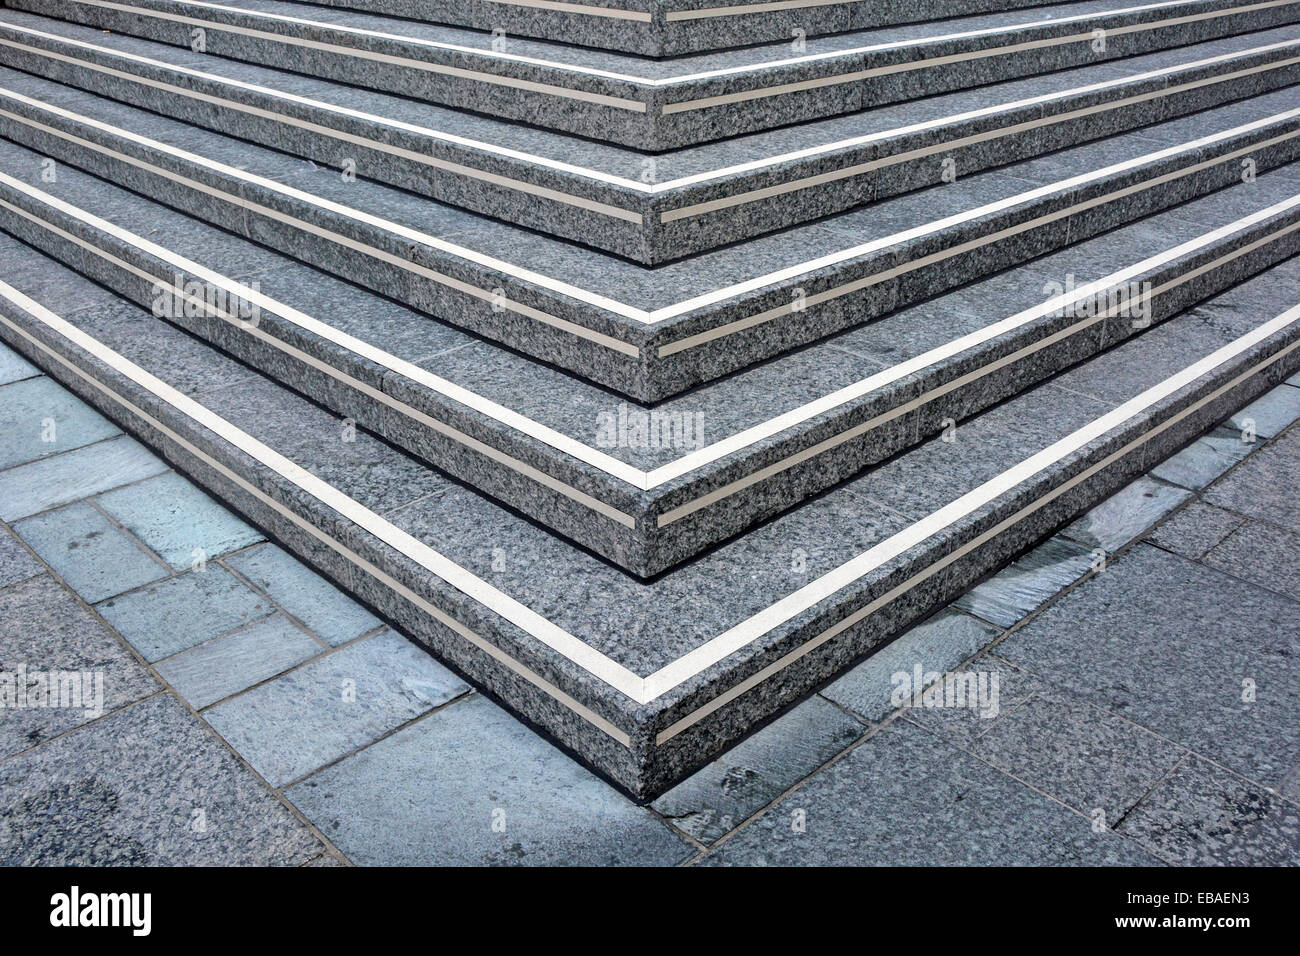 Konzept Erreichen Sie die obere Ecke der Treppe mit gesprenkelten Steinen Eingang zu erhöhten öffentlichen Gehweg, der zum Bürogebäude Eingang London England UK führt Stockfoto